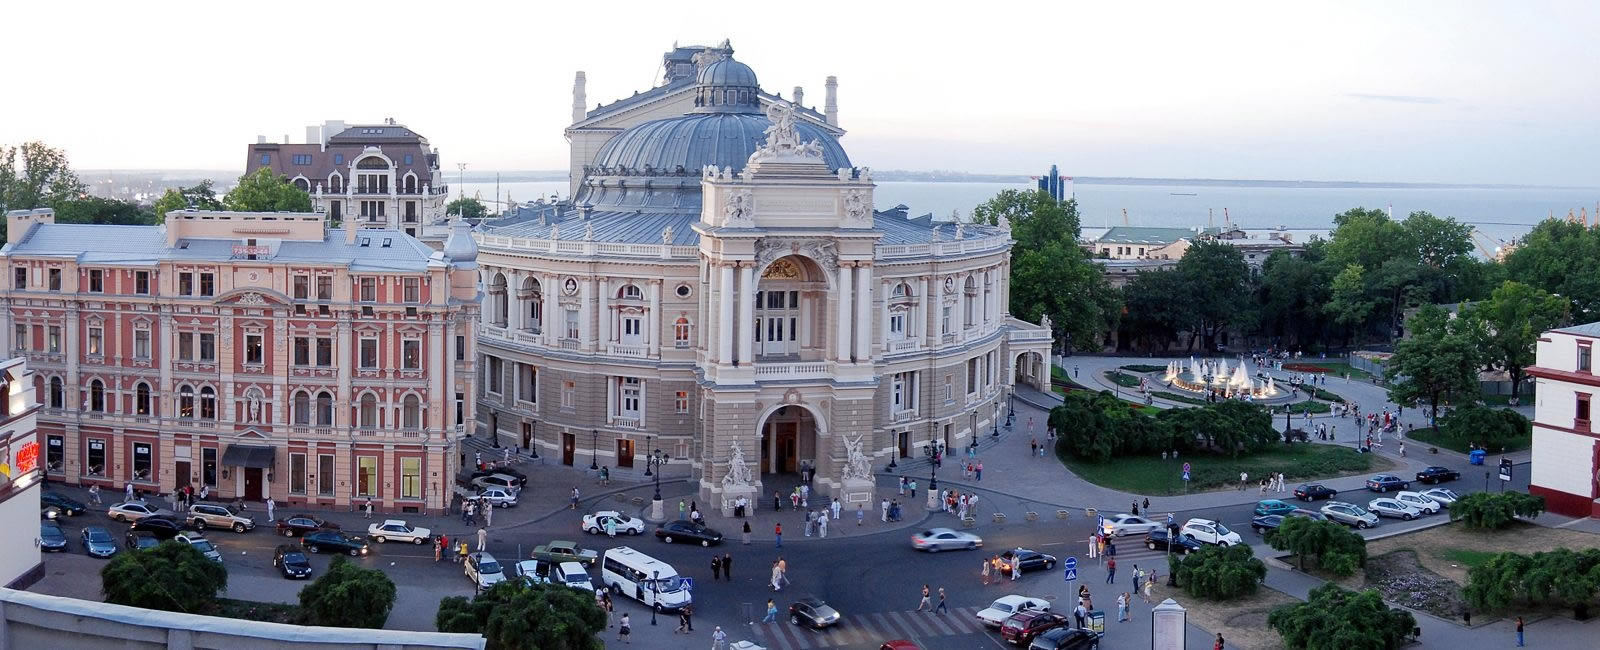 乌克兰敖德萨芭蕾舞歌剧院